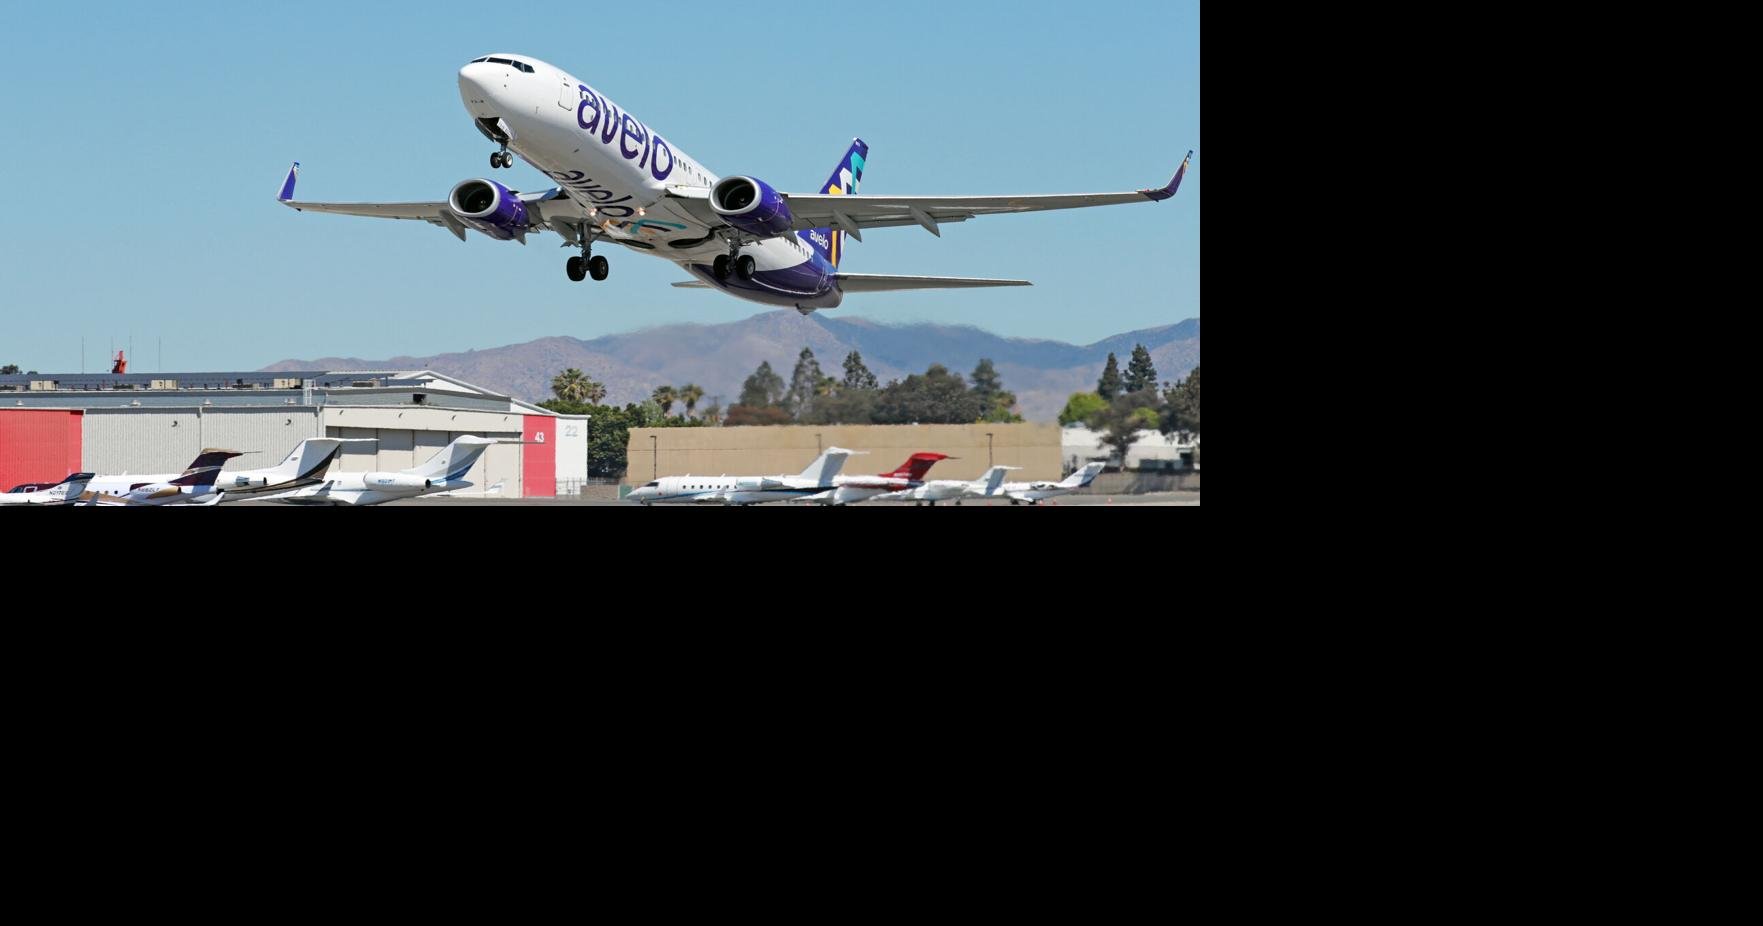 Avelo航空公司将从湾区的索诺玛县机场新增四个直航航线：爱达荷州博伊西，蒙大拿州卡利斯佩尔，俄勒冈州波特兰和华盛顿州帕斯科。